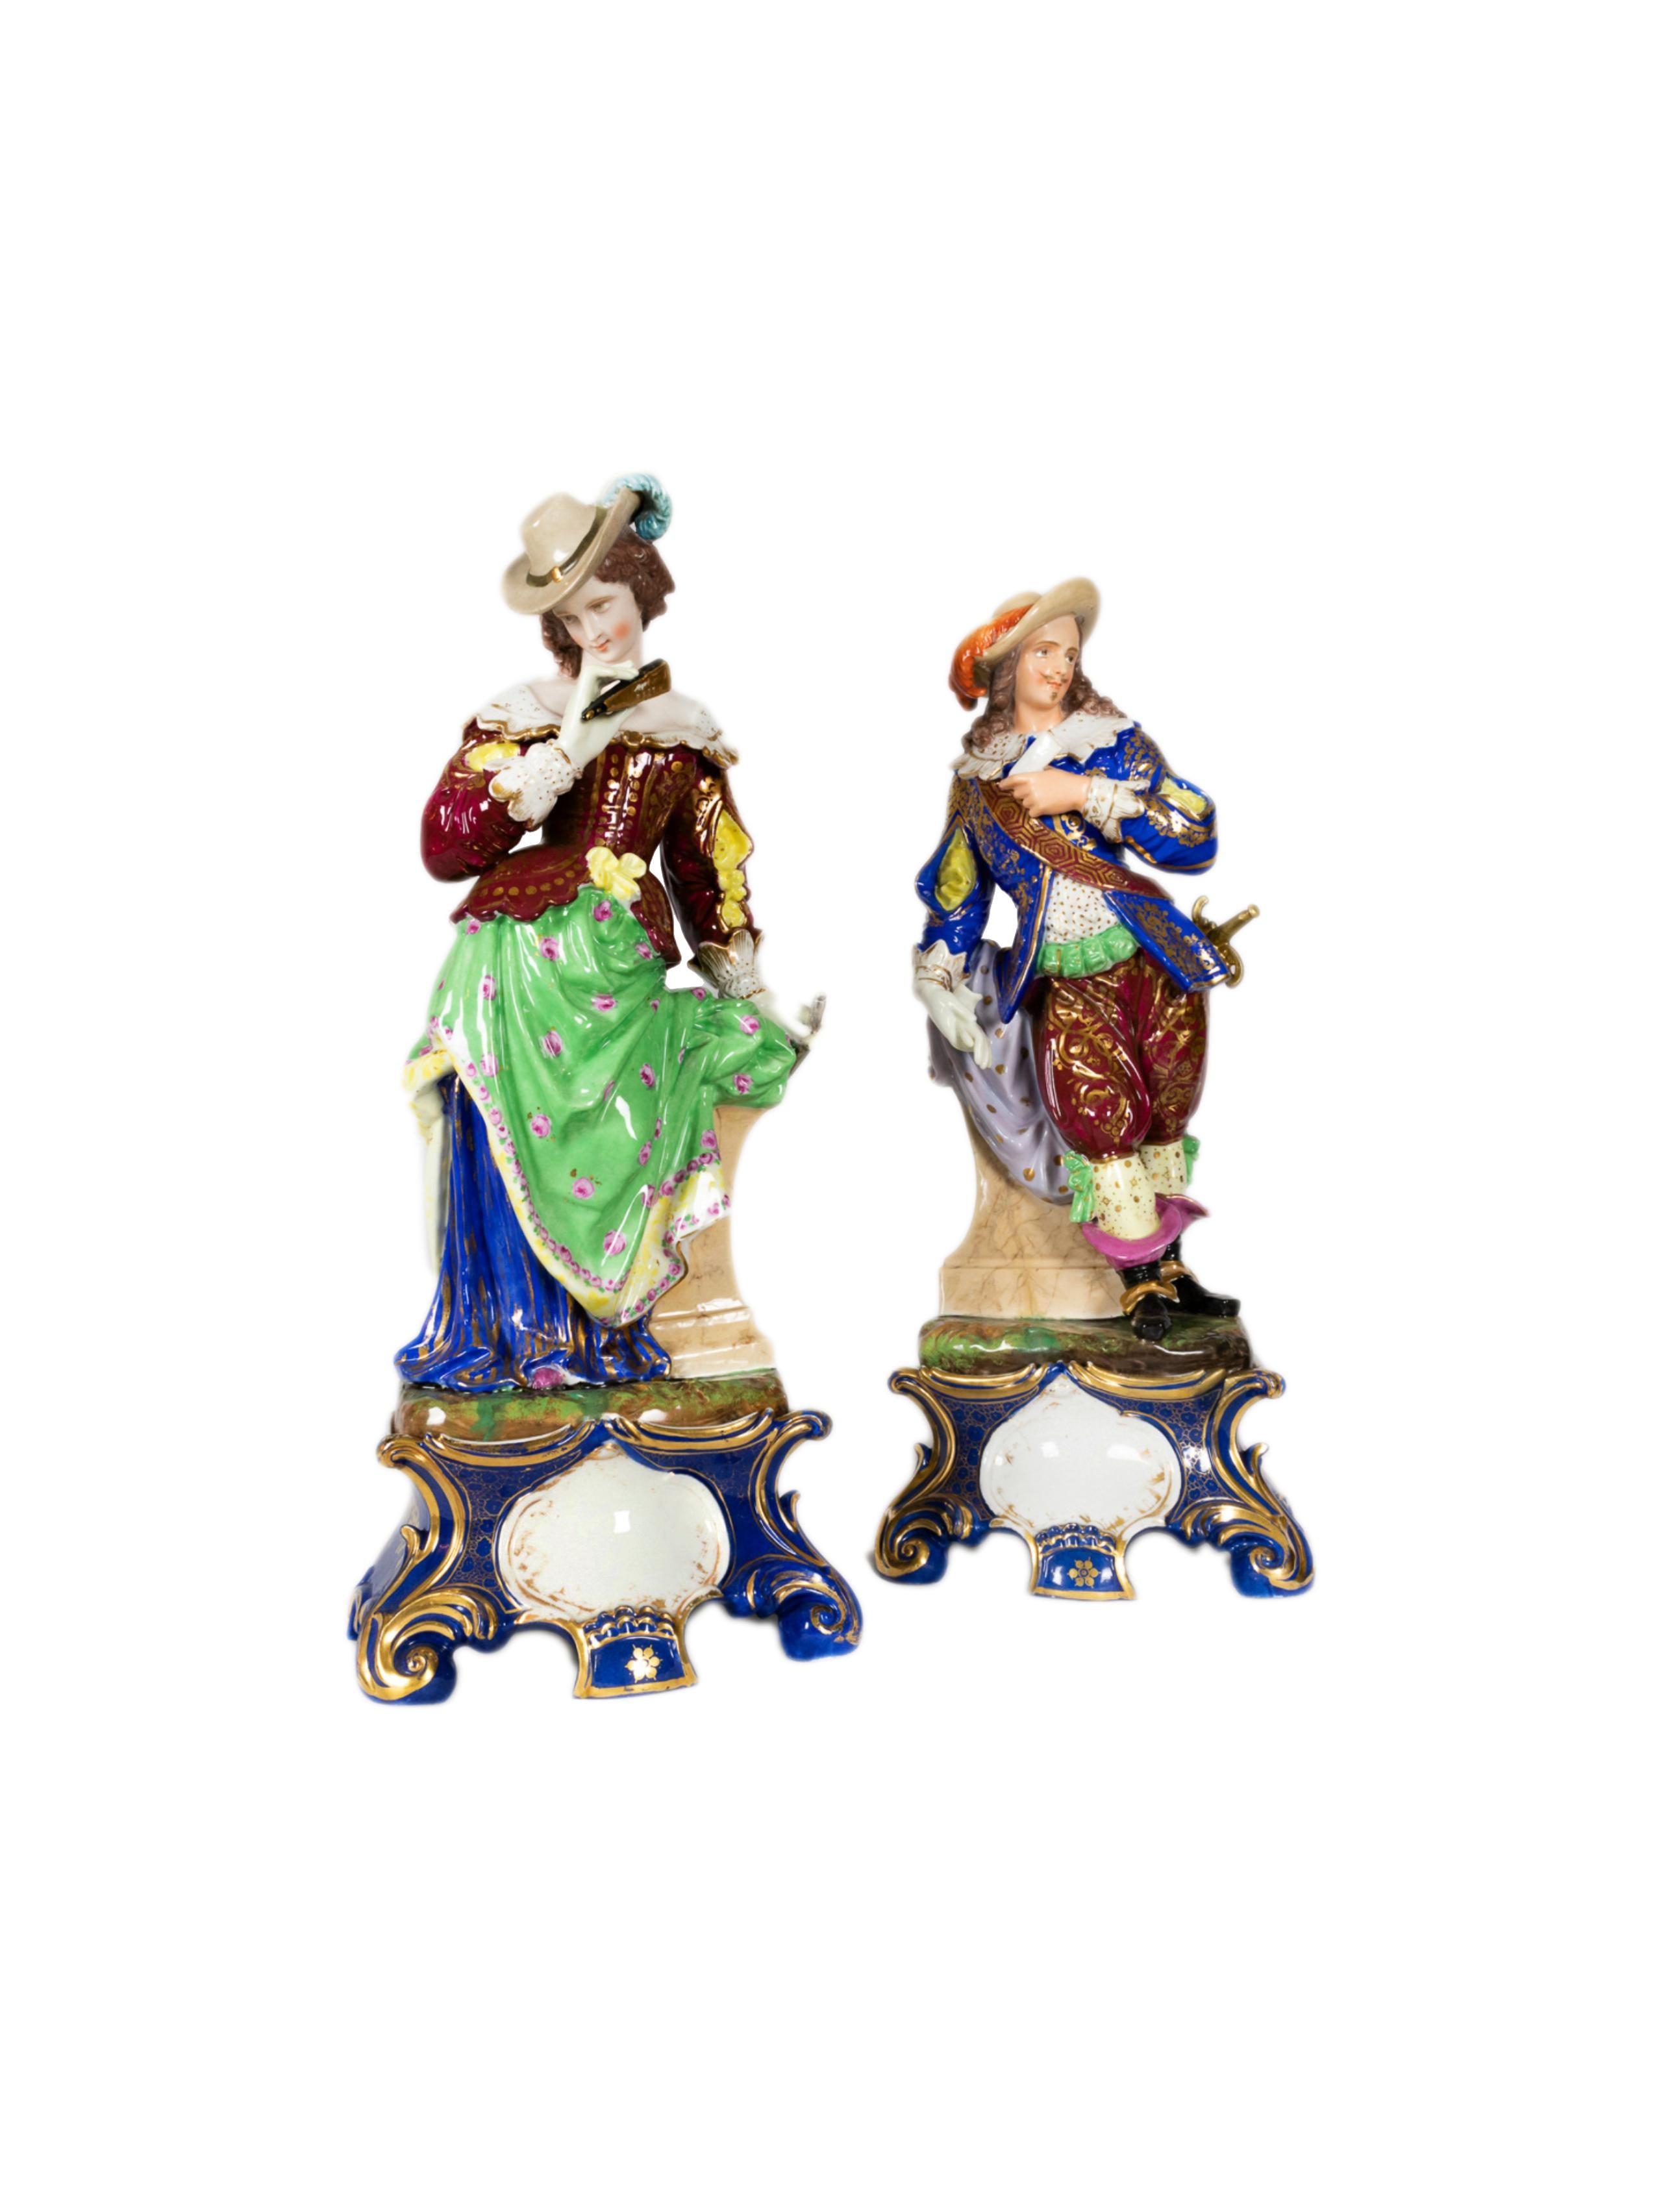 Paire de grandes figurines en porcelaine polychrome représentant un mousquetaire et sa bien-aimée avec un éventail à la main, habillés dans le style du XVIIIe siècle, avec une base amovible en porcelaine.
Dimensions : Hauteur 60 cm Longueur 25 cm